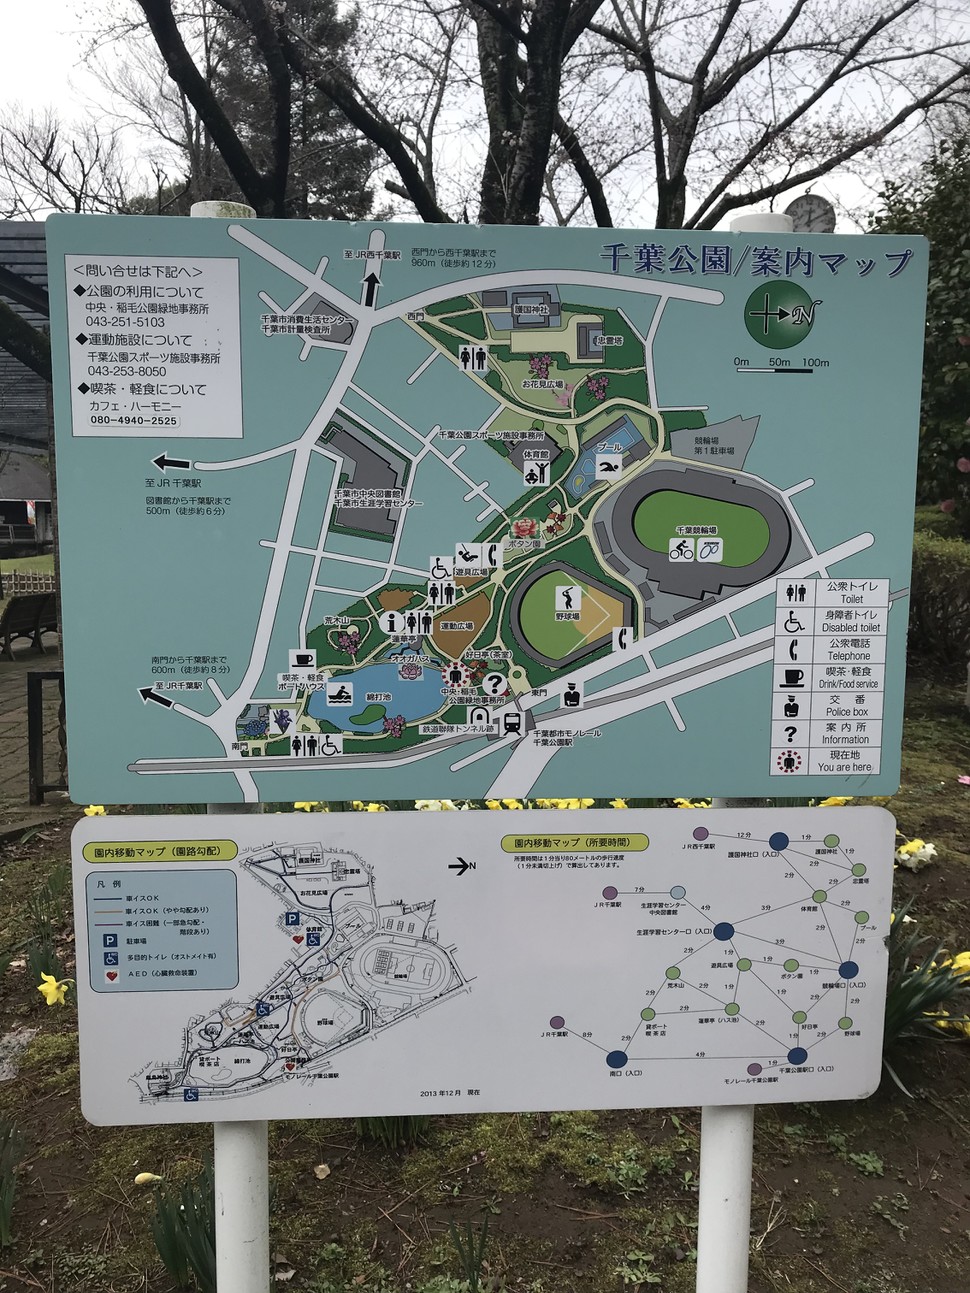 千葉公園の観光情報（見どころ・評判・アクセス等）